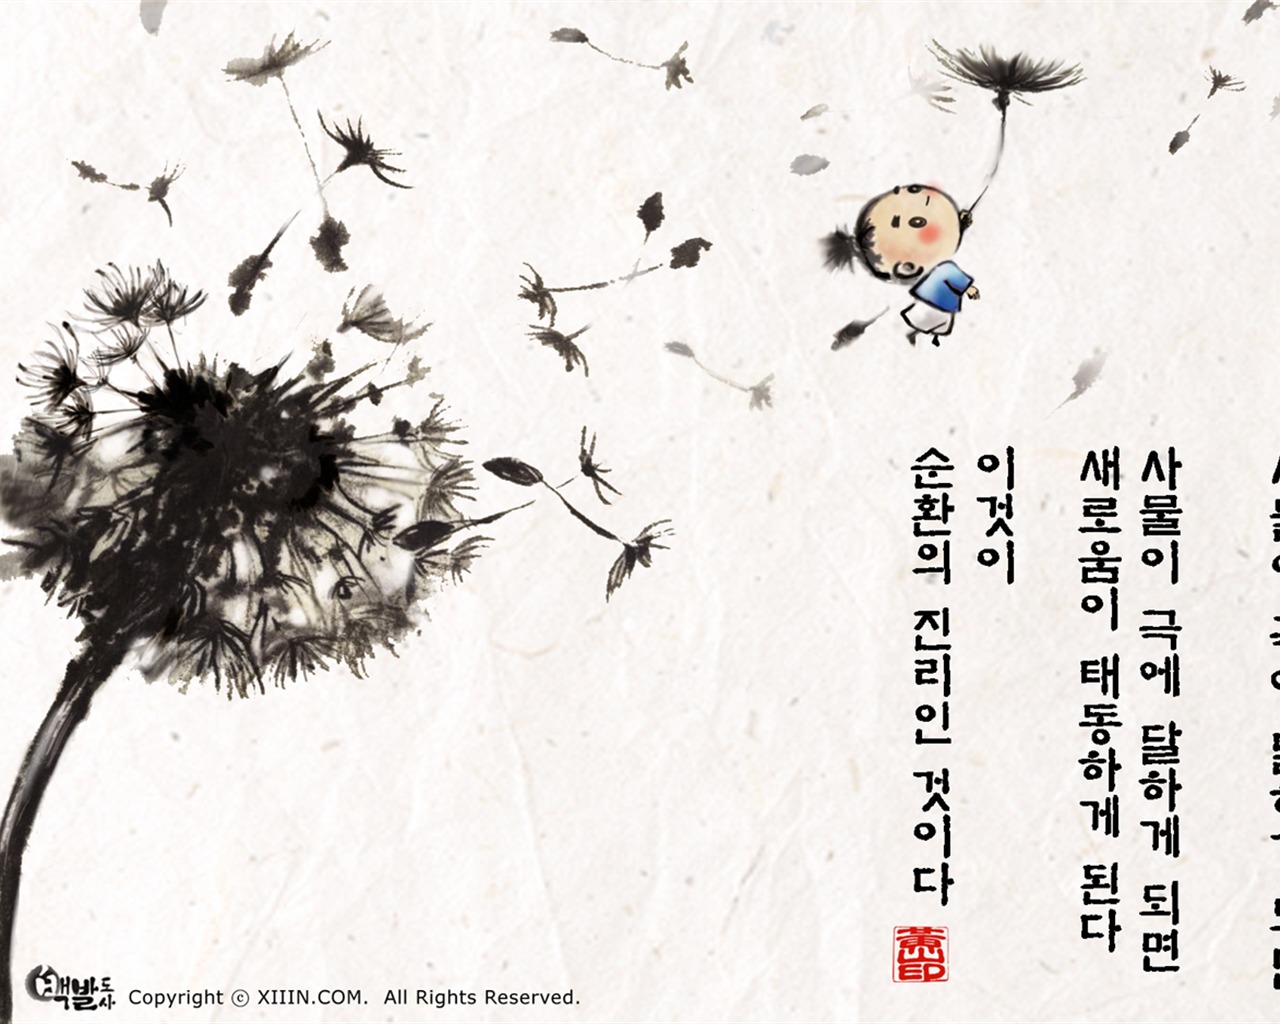 Sud Corée du lavage d'encre papier peint caricature #43 - 1280x1024